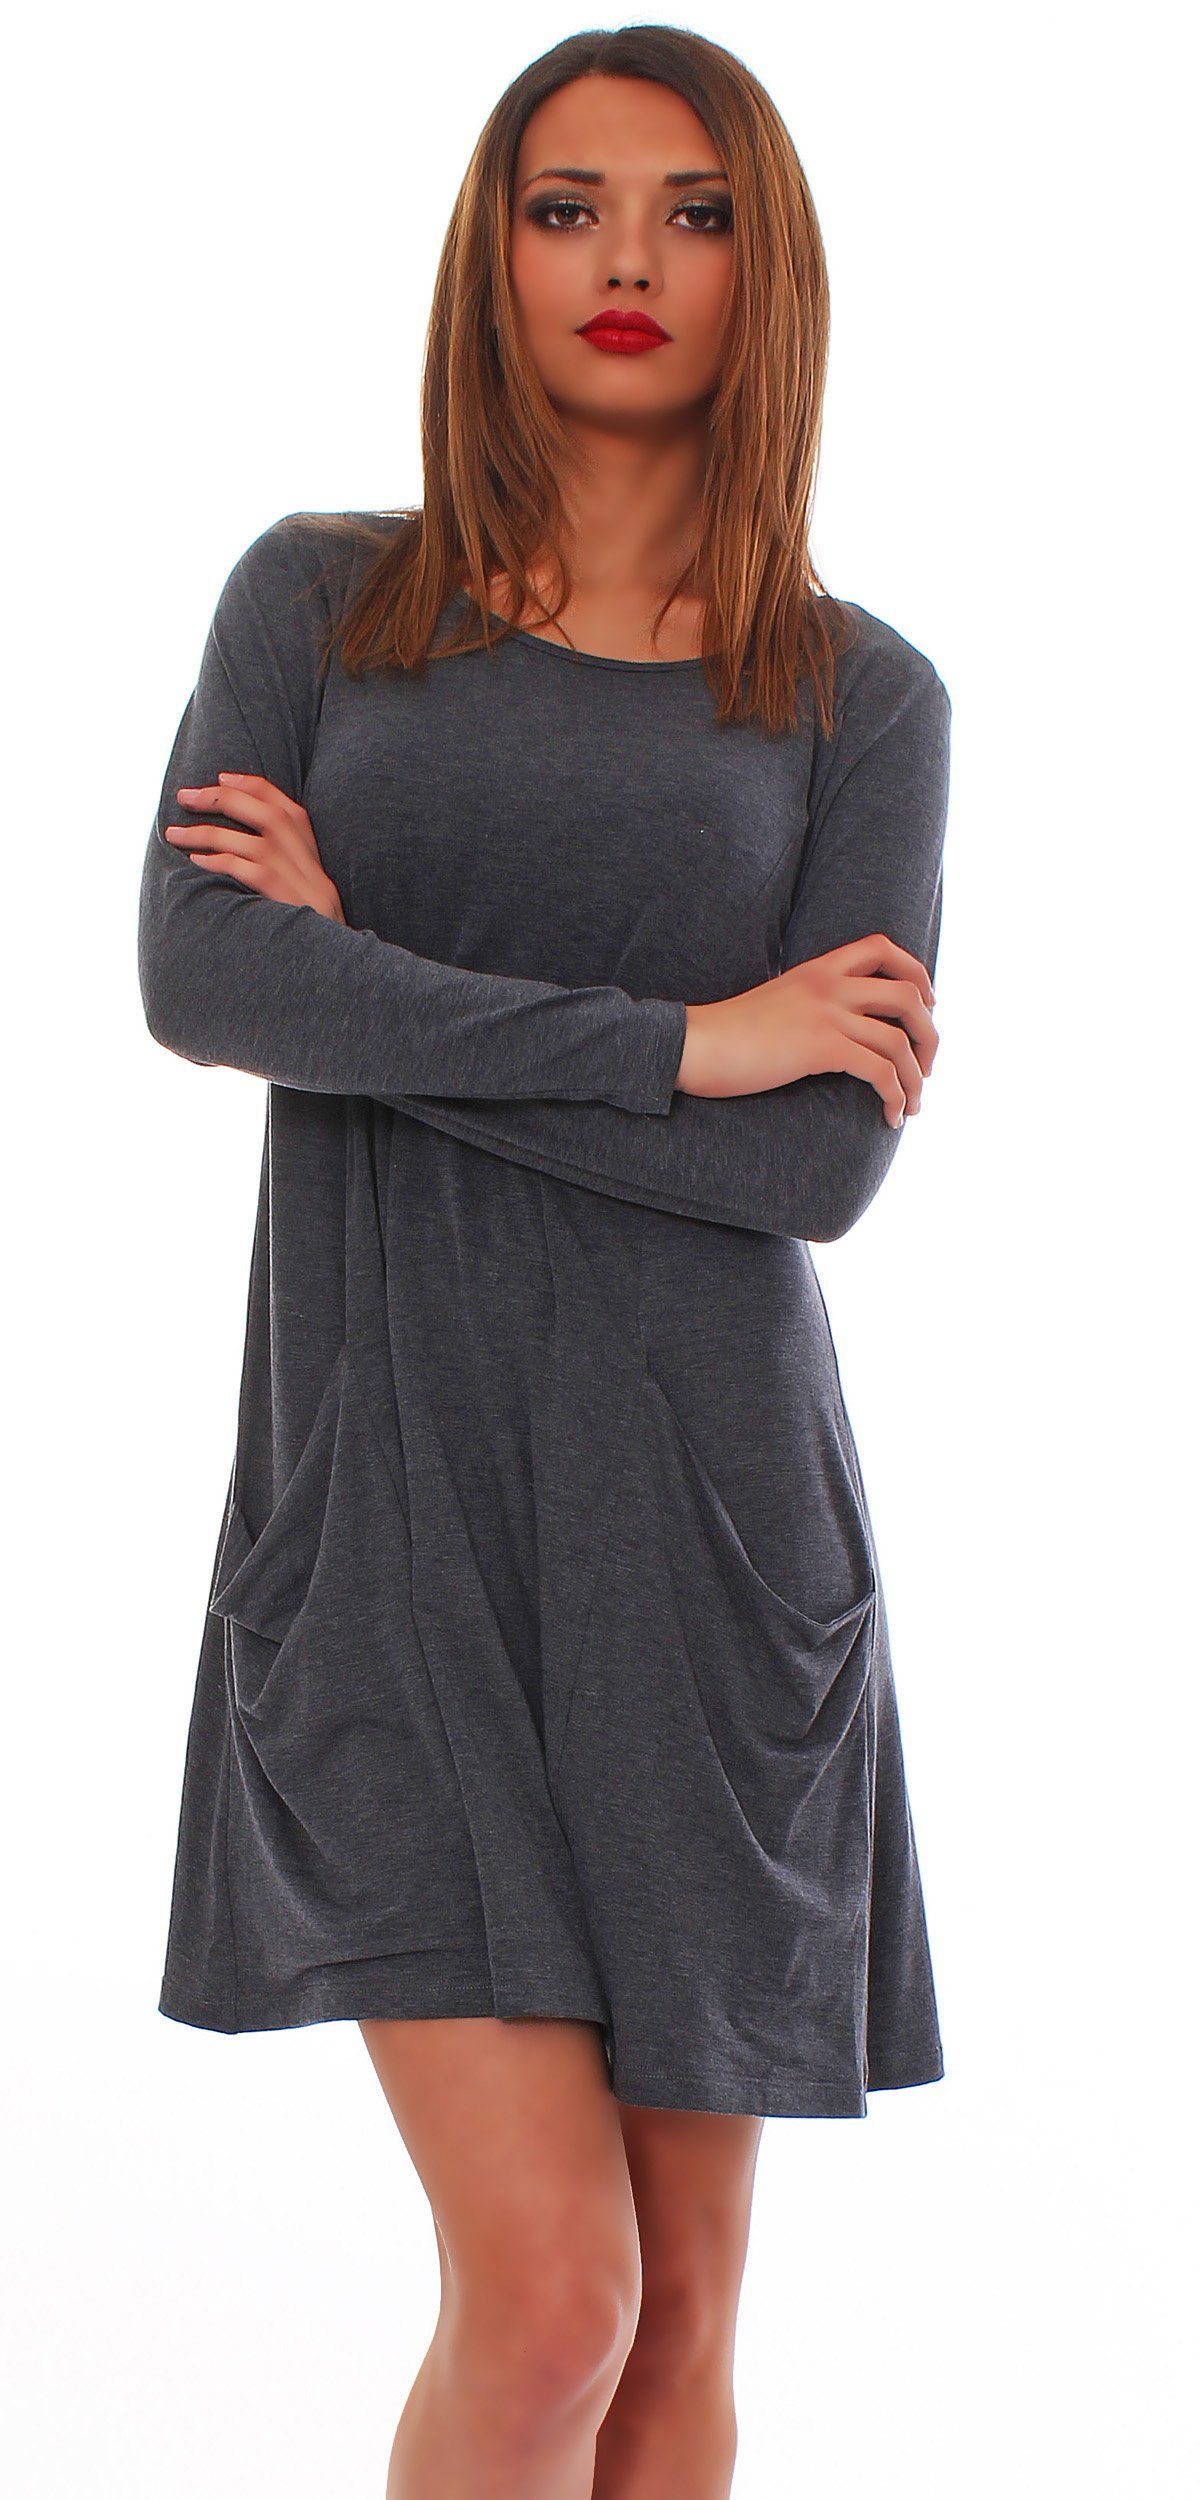 Mississhop A-Linien-Kleid Kleid Tunika Longshirt Pulli Tunika Minikleid mit Taschen 6514 Graphit_Lang | Sommerkleider